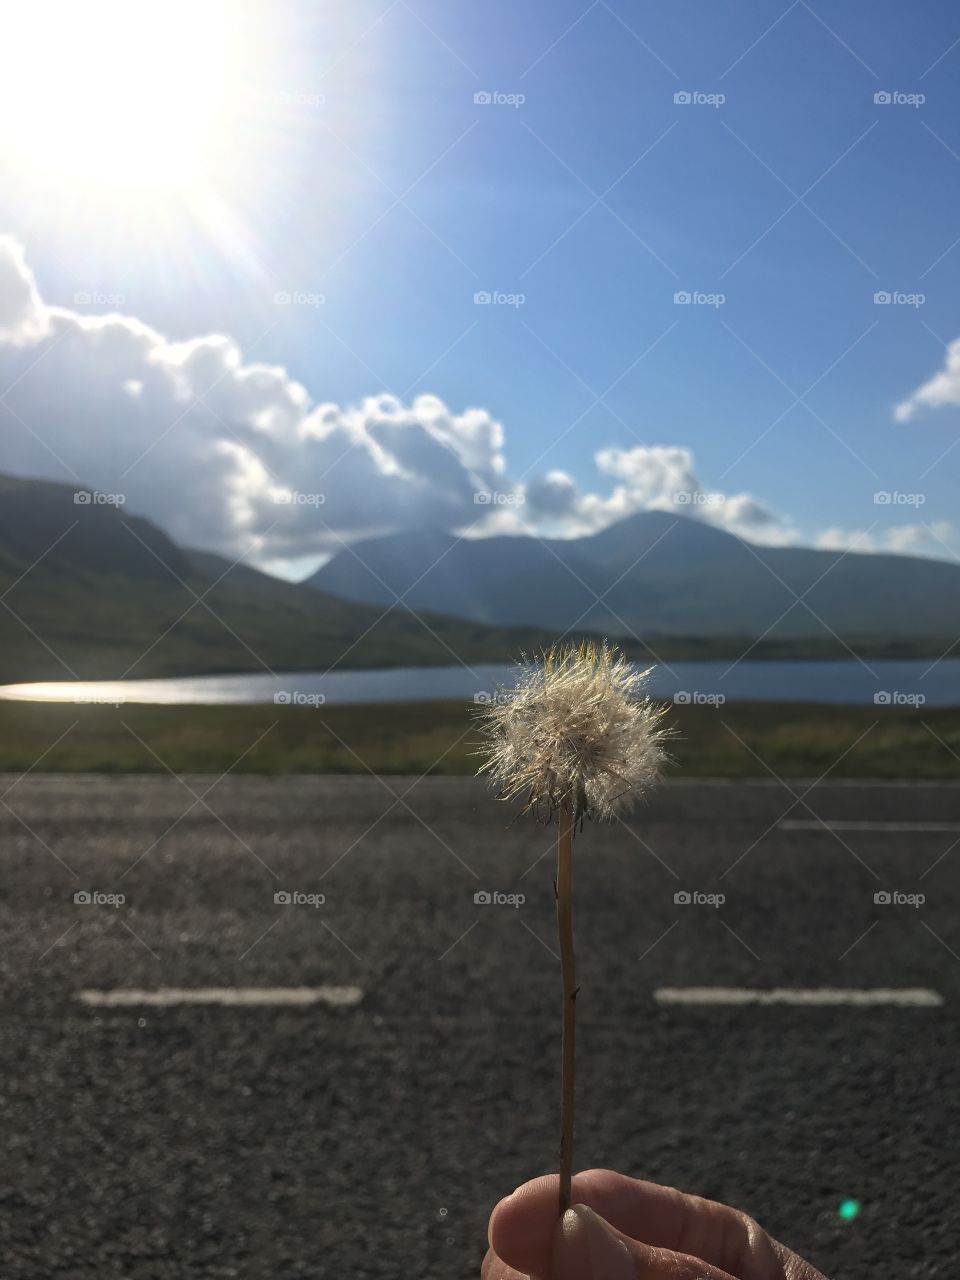 Flower in Scotland 